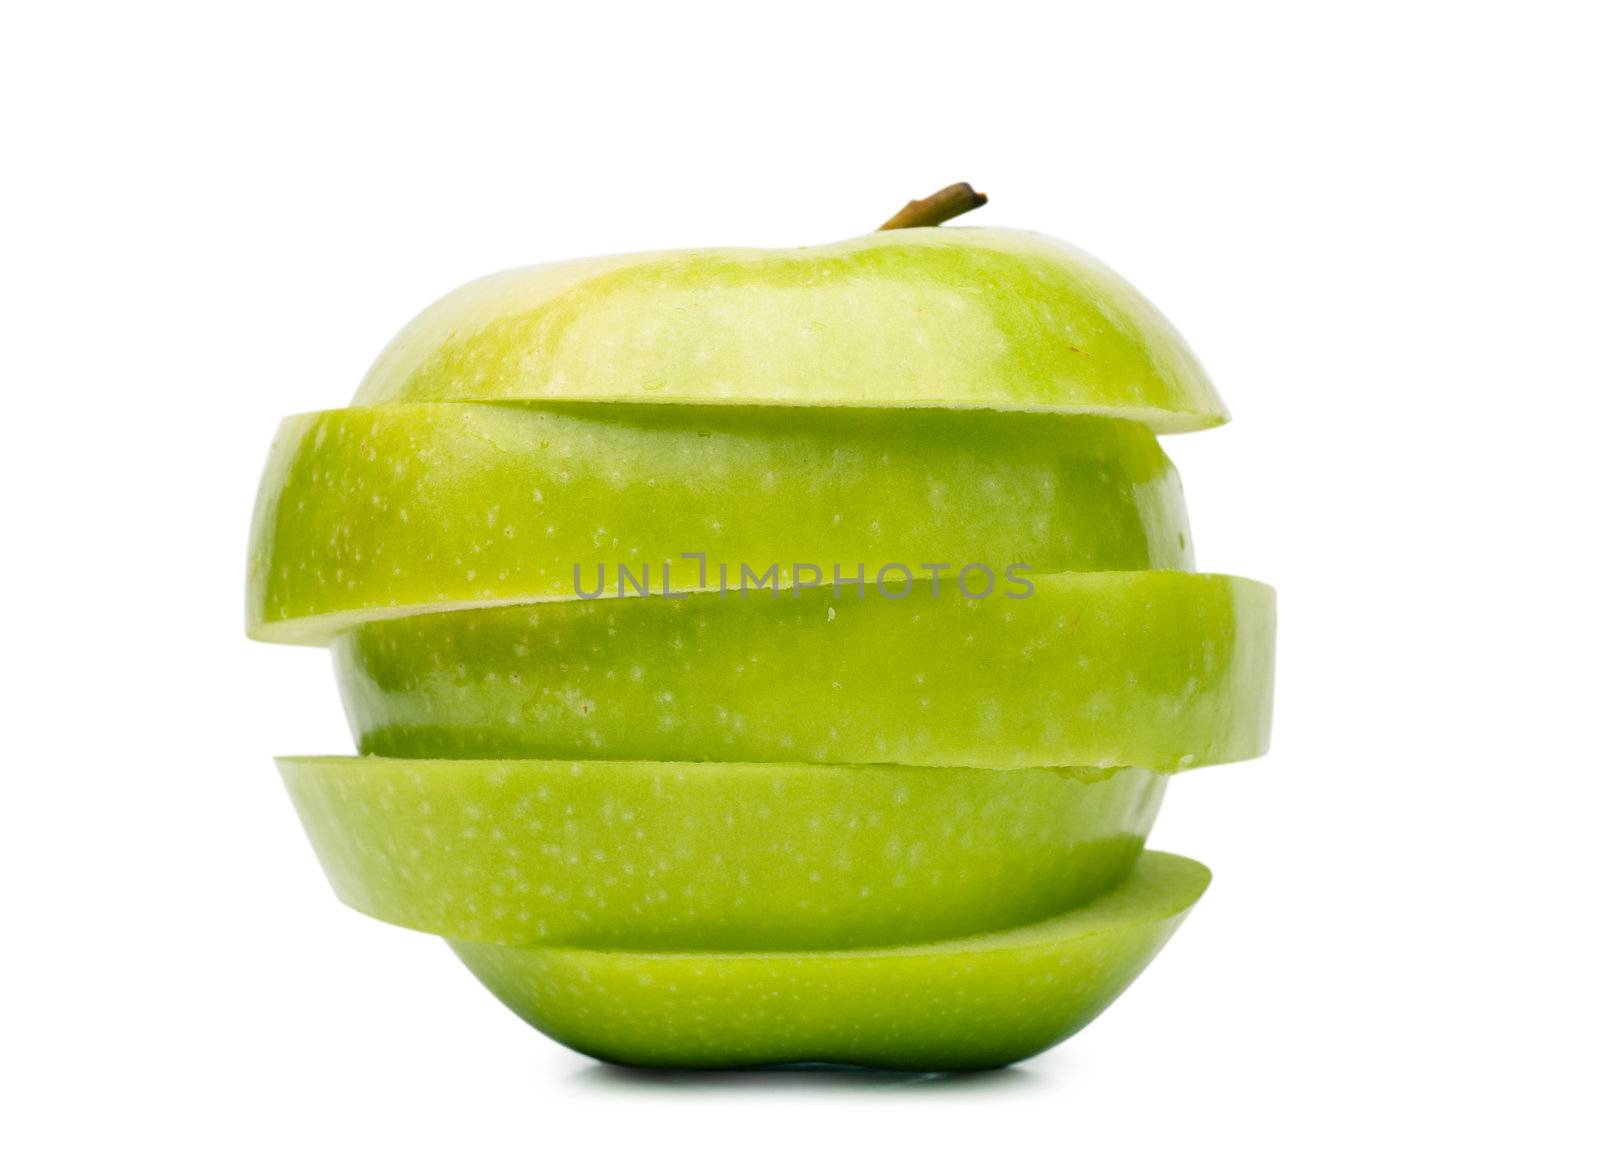 Sliced apple by AGorohov